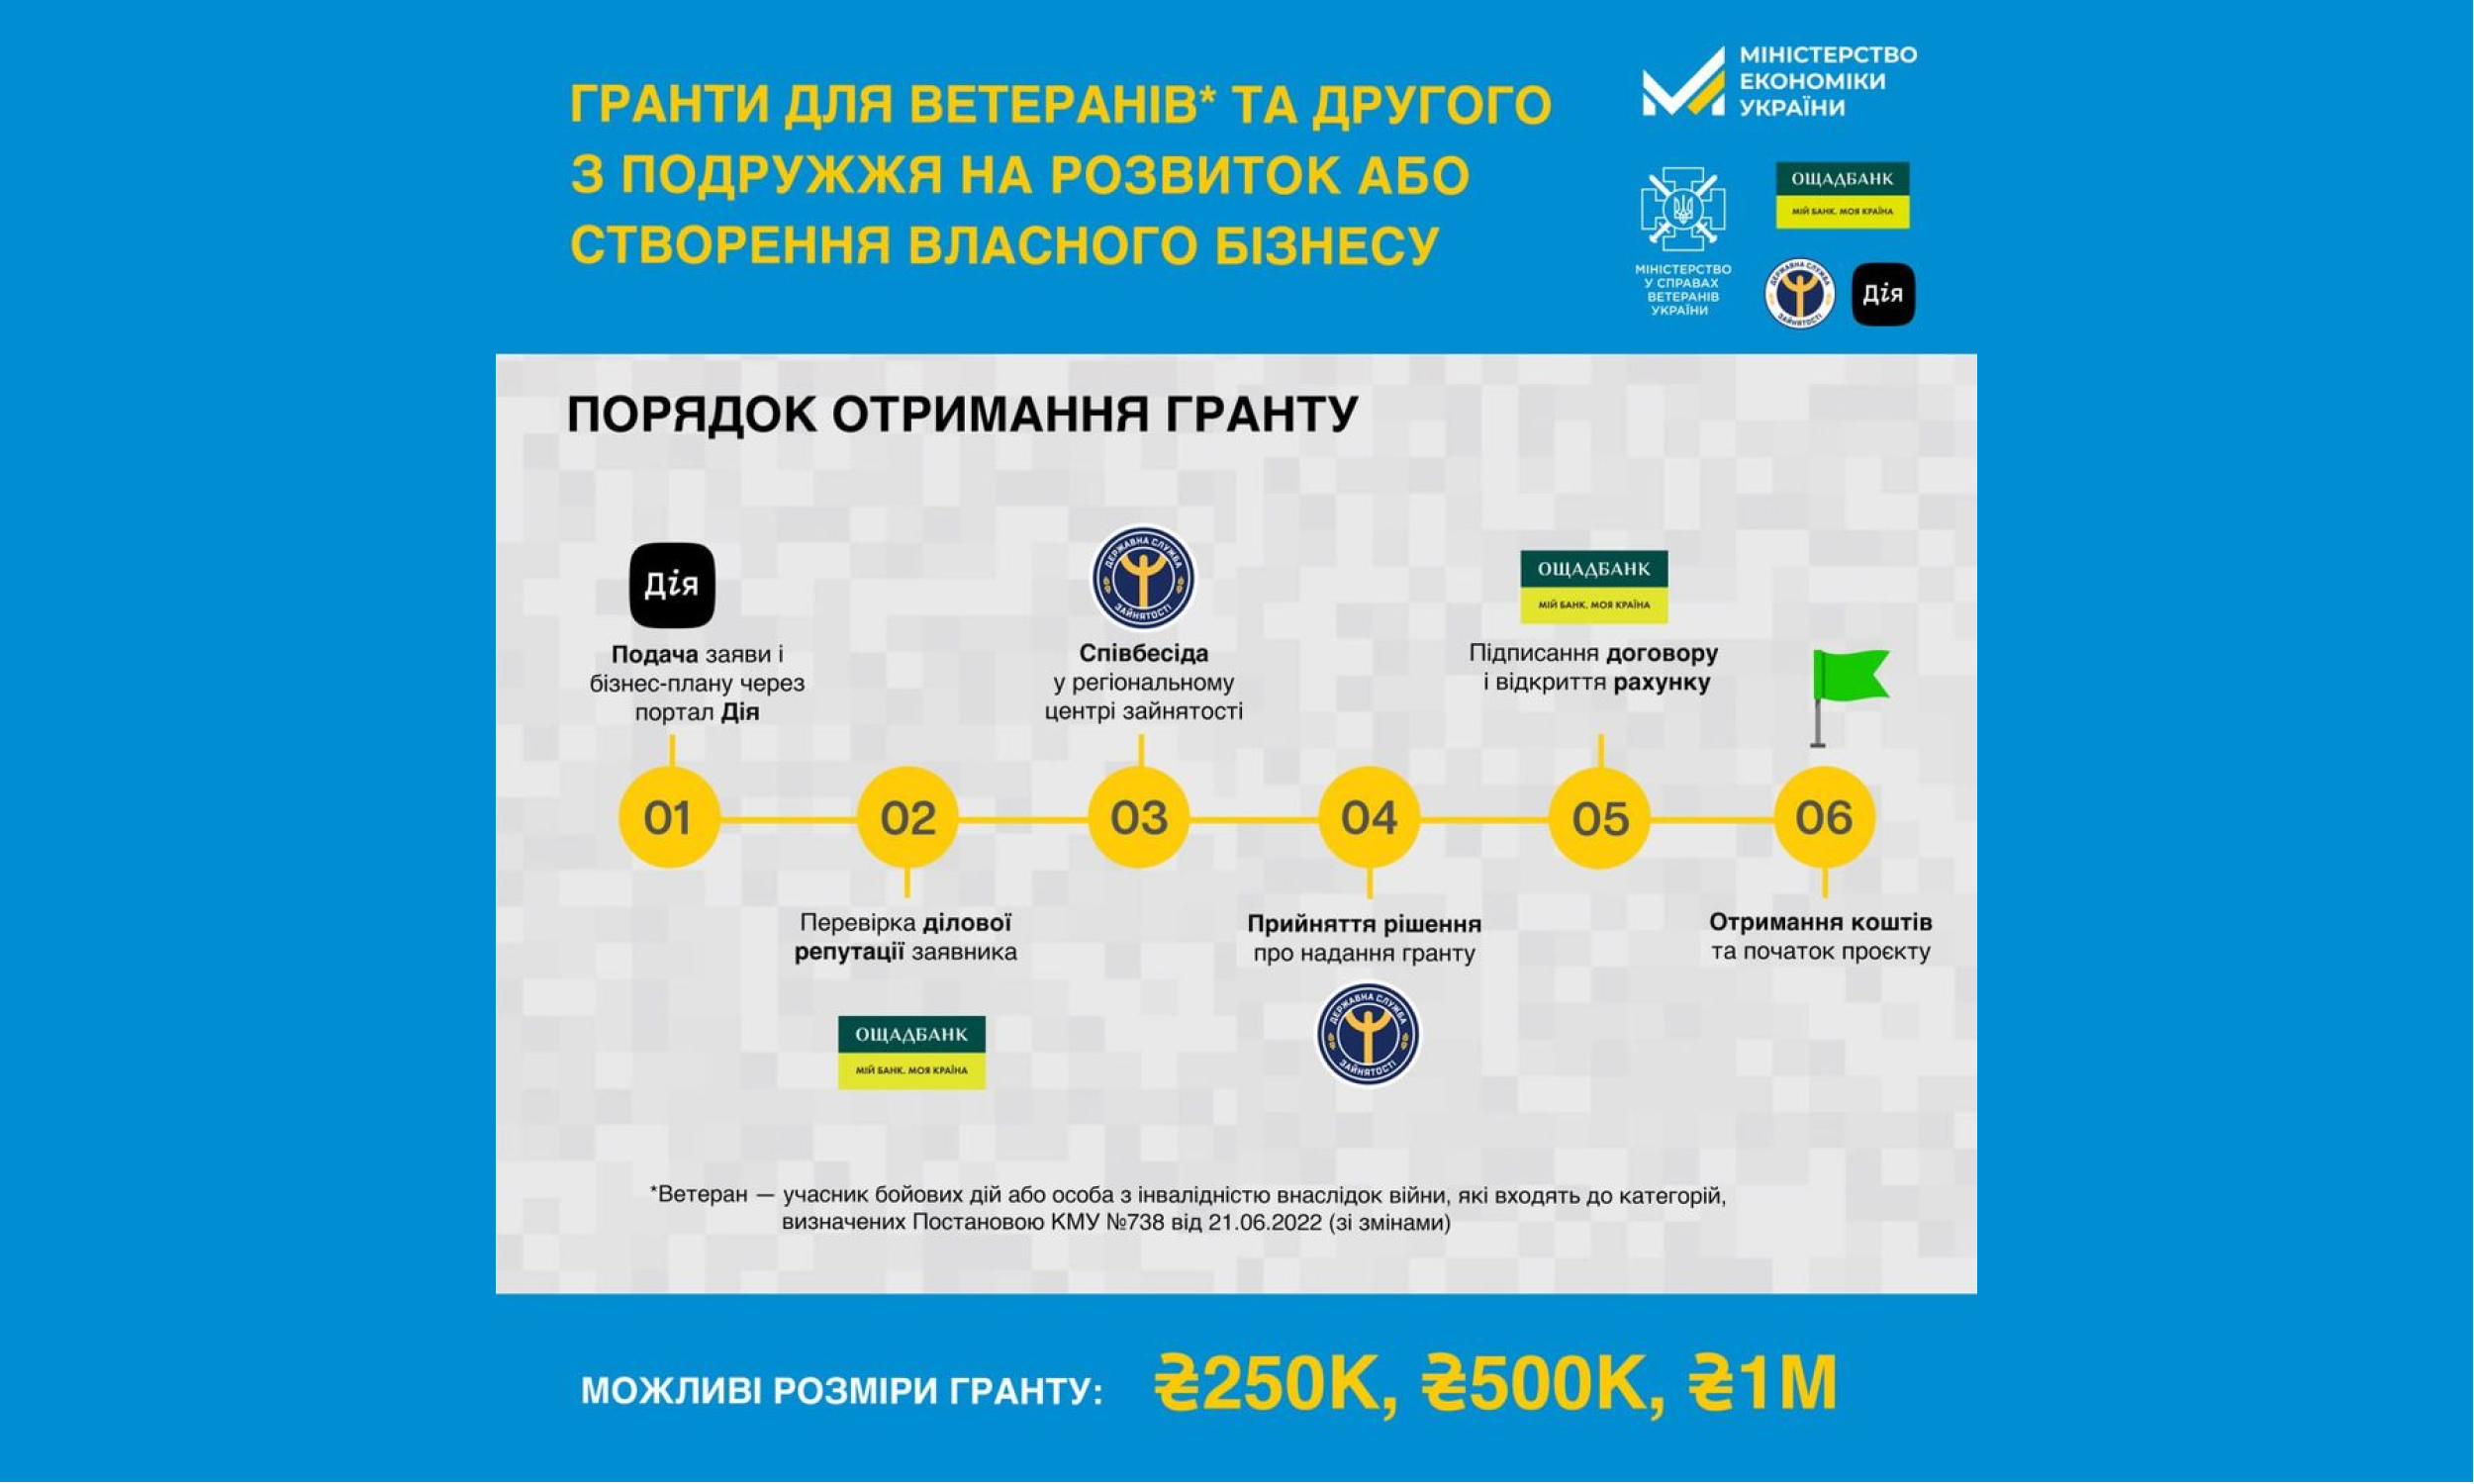 єРобота: Українські захисники й захисниці можуть отримати грант від держави на підприємництво